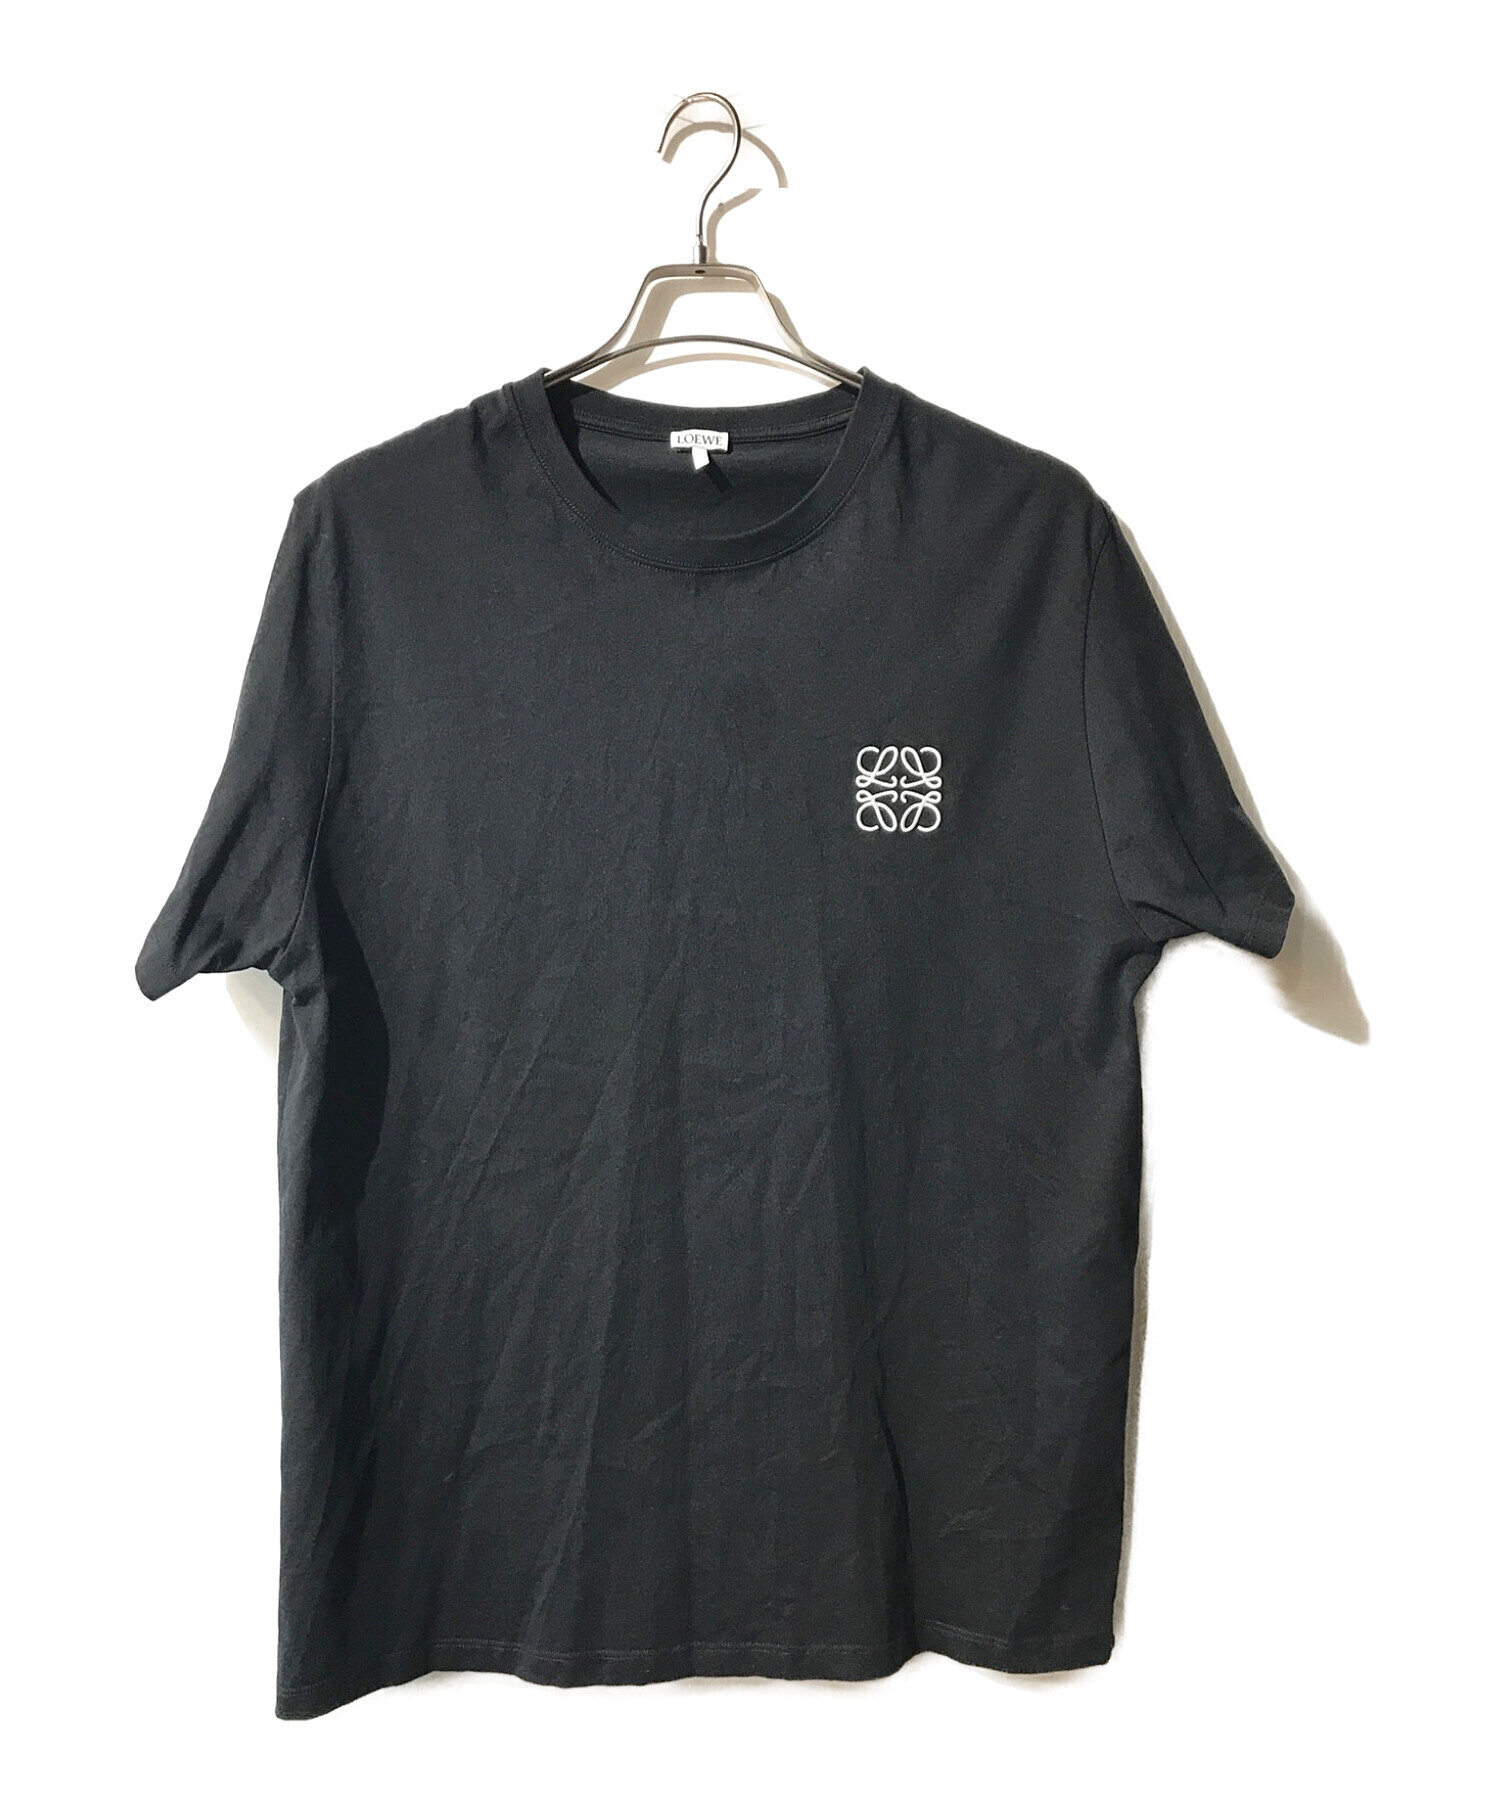 LOEWE (ロエベ) アナグラム ワンポイントアナグラム Tシャツ ブラック サイズ:XL